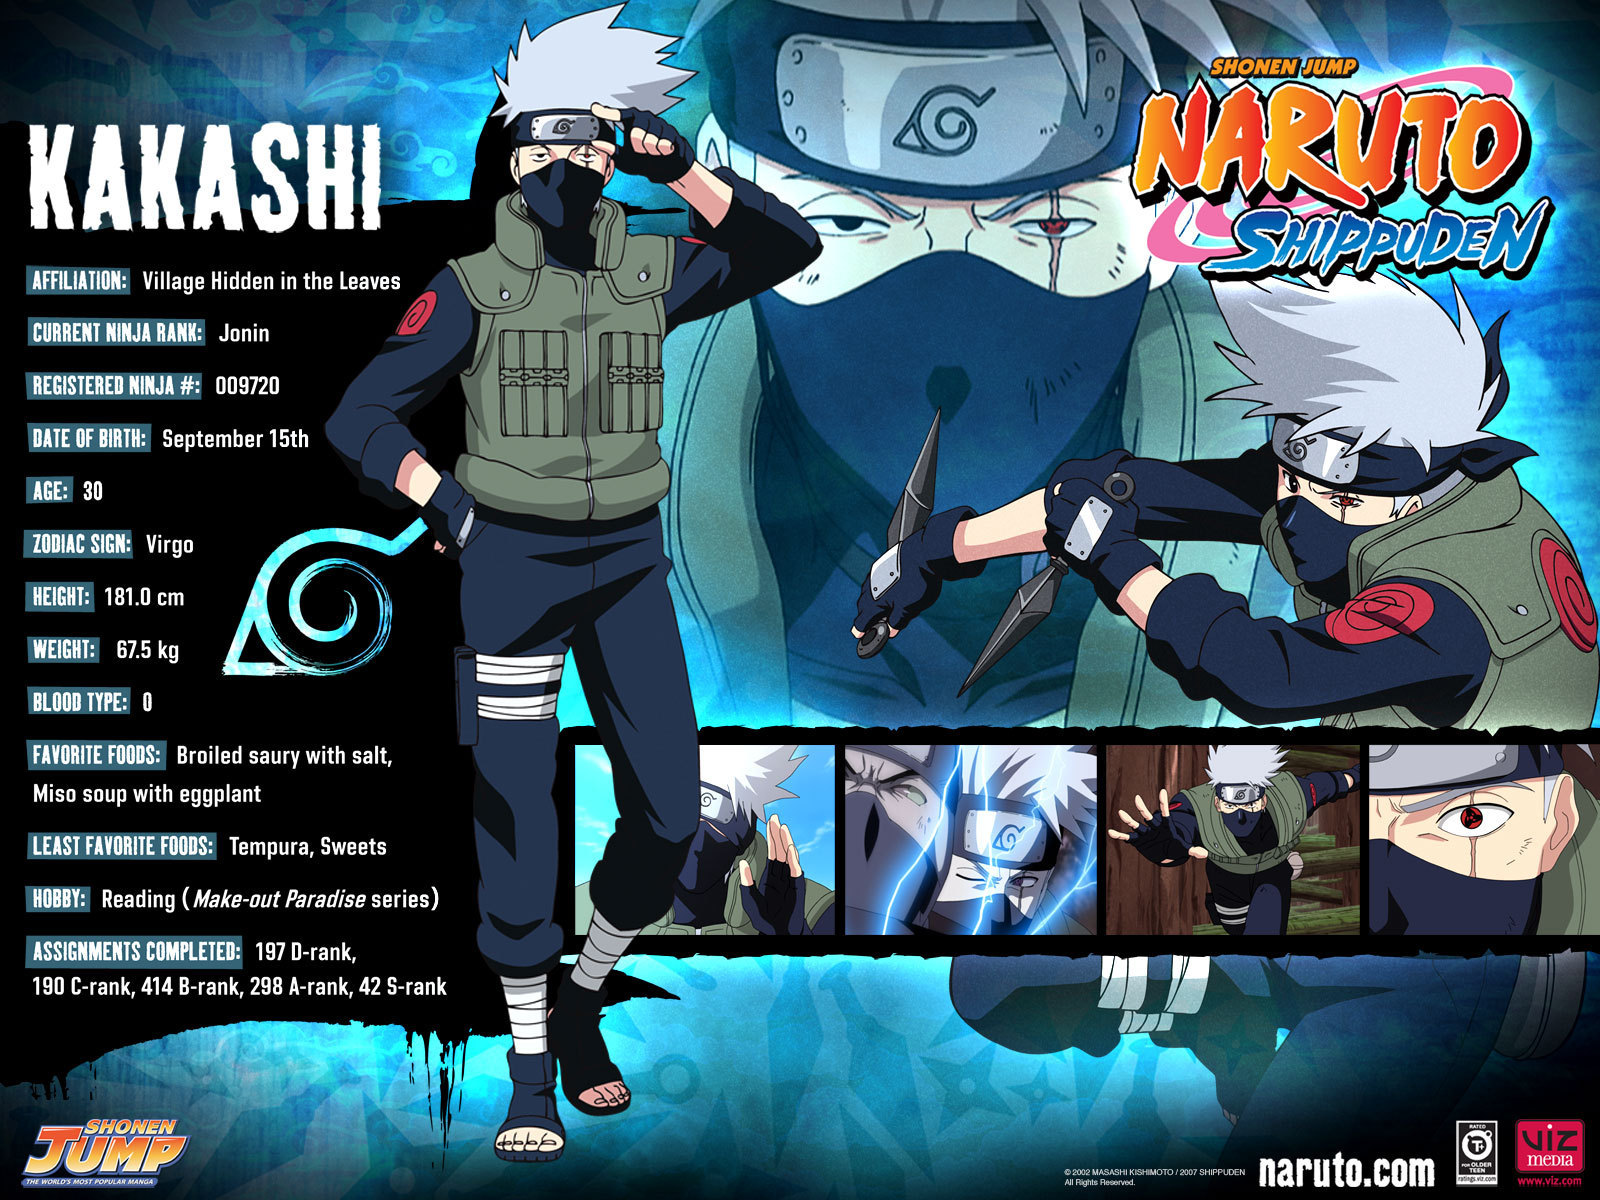 Description Kakashi Naruto Shippuden Wallpaper Is